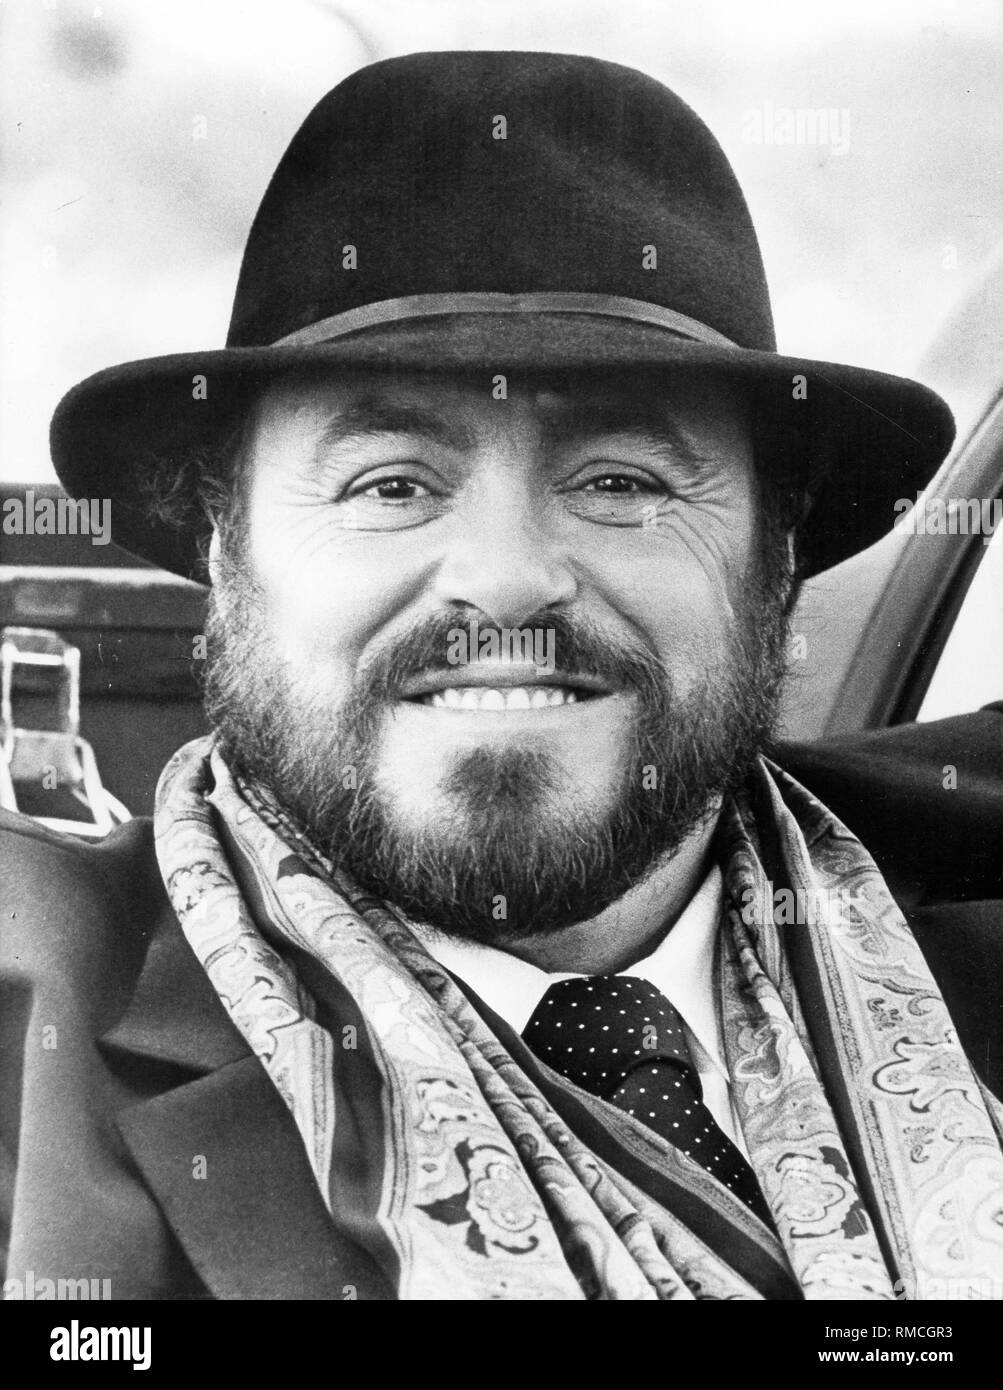 Luciano Pavarotti, un chanteur d'opéra italien, avec foulard et un chapeau  Photo Stock - Alamy